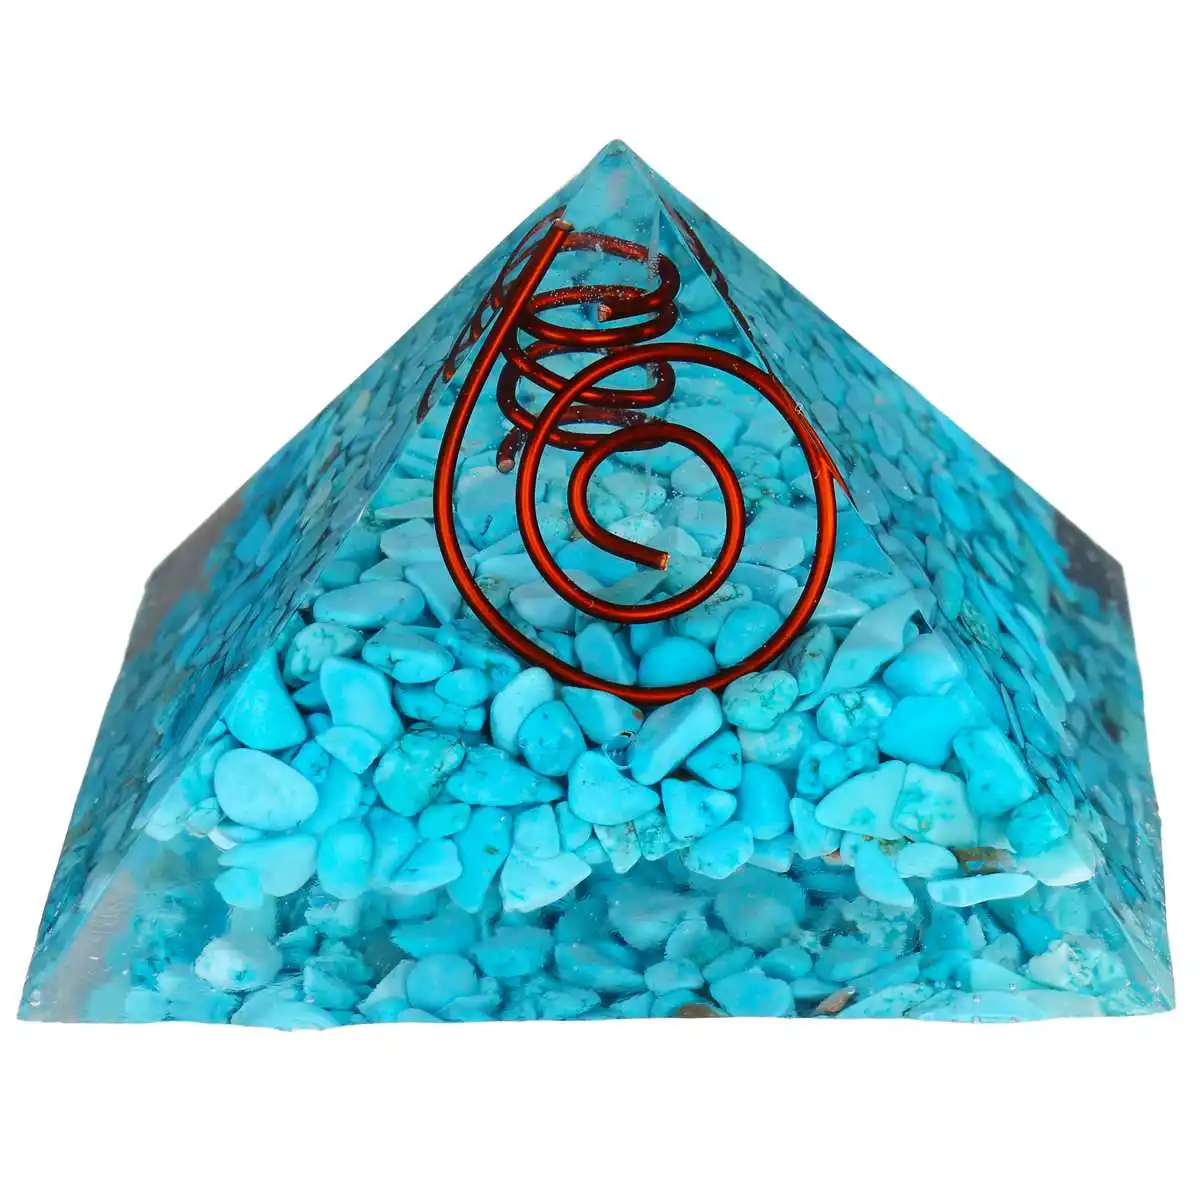 60-75 мм натуральный кристалл кварца пирамида ТОЧКА столб Резной Камень Чакра орнамент целебный Кристалл Природный камень коробки и шкатулки декоративные ручной работы - Цвет: 3 Type